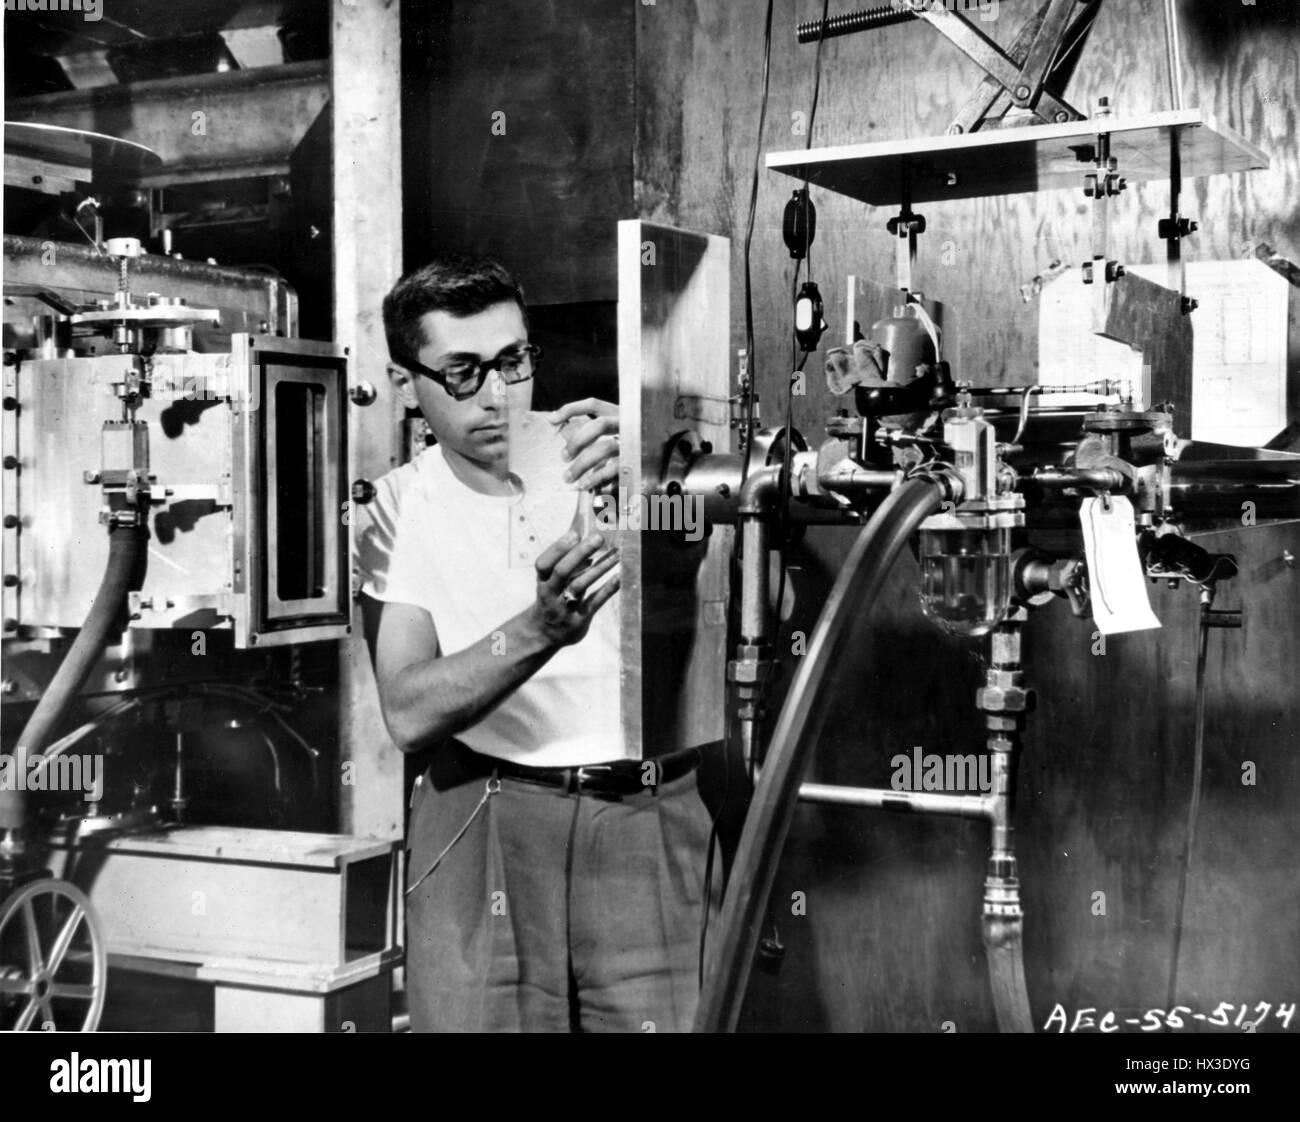 Un fisico si prepara un pezzo di plastica che verrà bombardato con miliardi di volt protoni nel Cosmotron a Brookhaven National Laboratory di Upton, New York, 1955. Immagine cortesia del Dipartimento Americano di Energia. Foto Stock